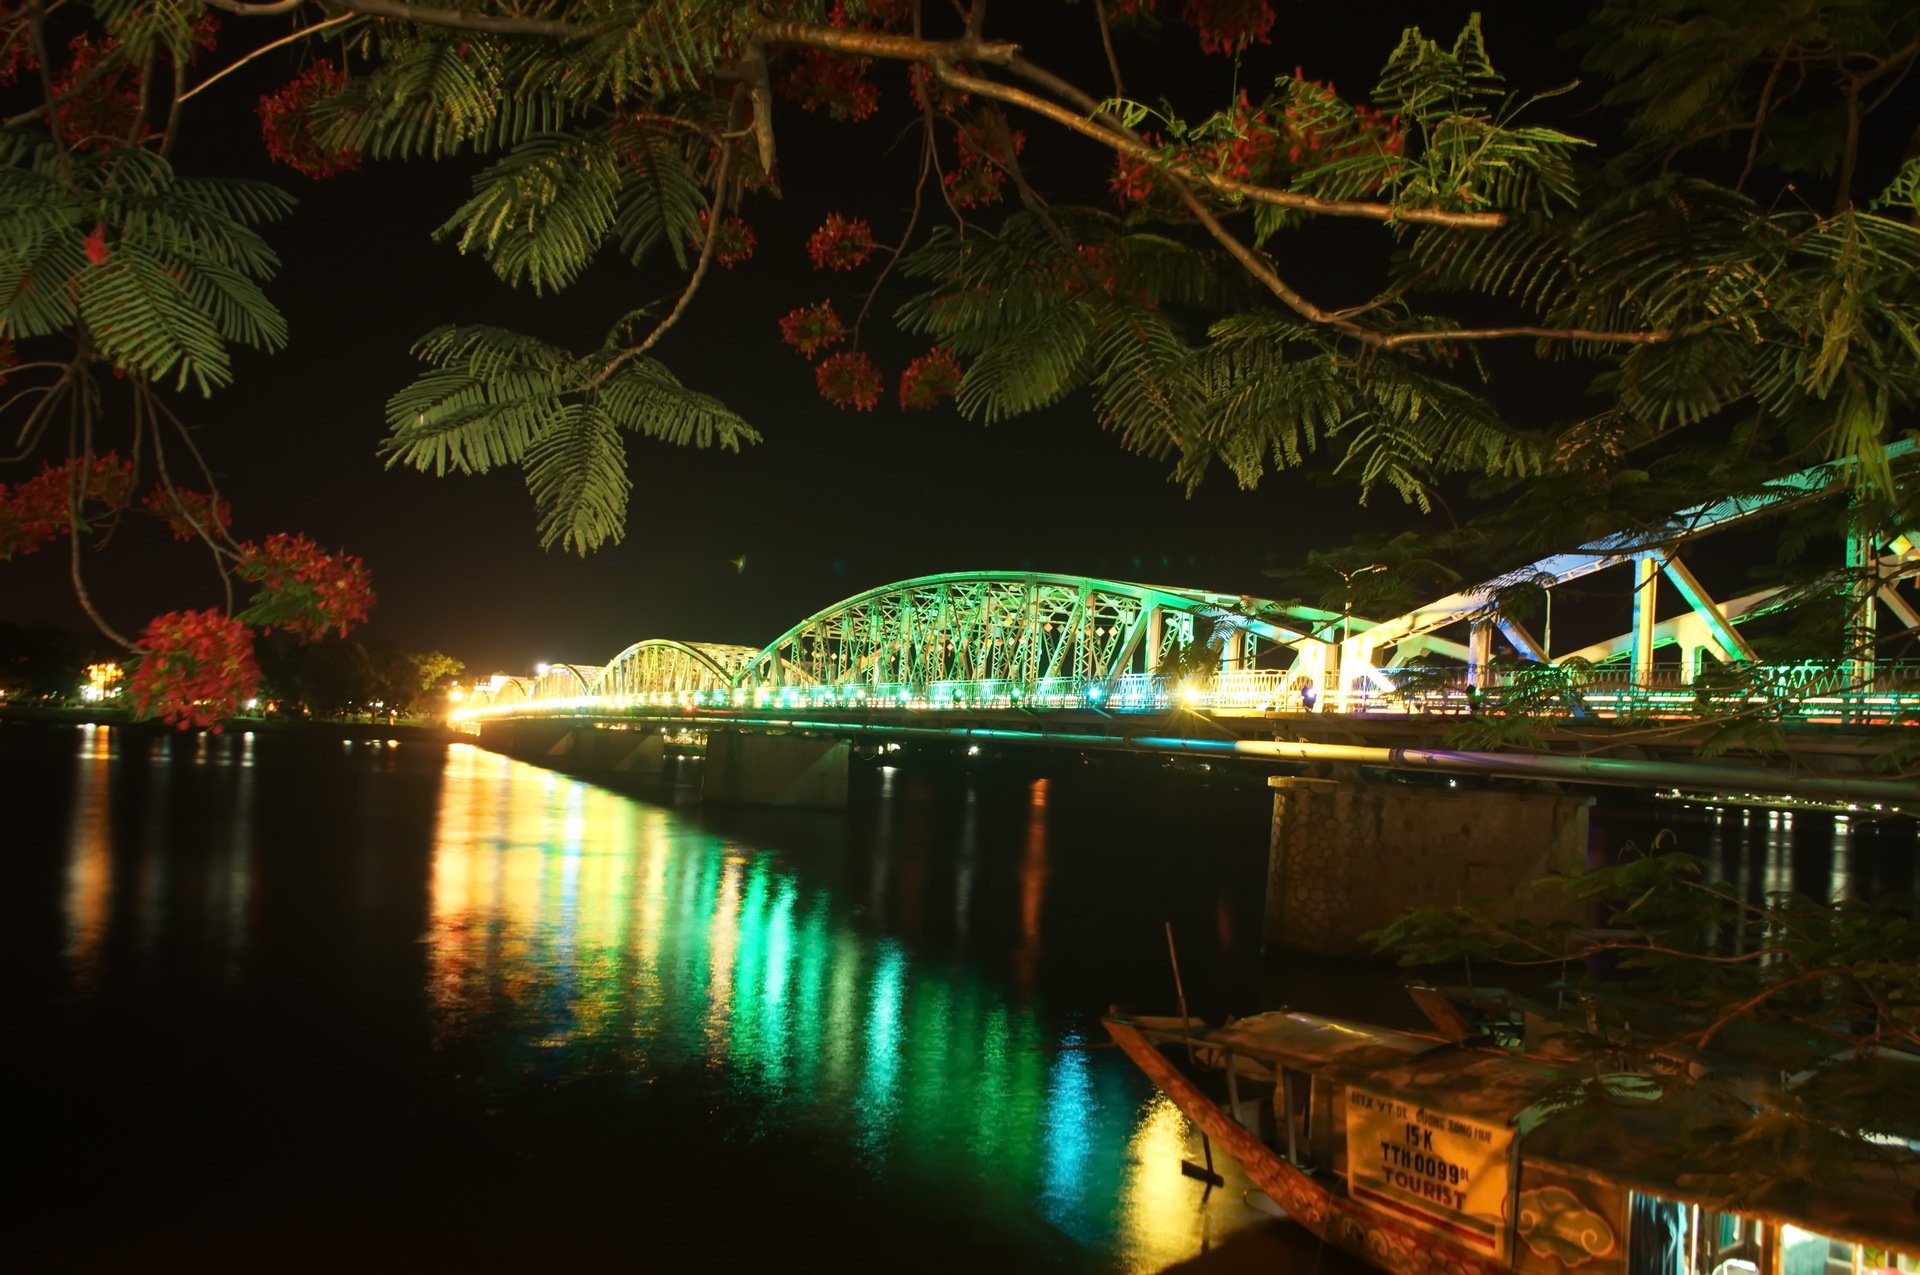 Trang Tien Bridge: Discover the romantic symbol of Hue